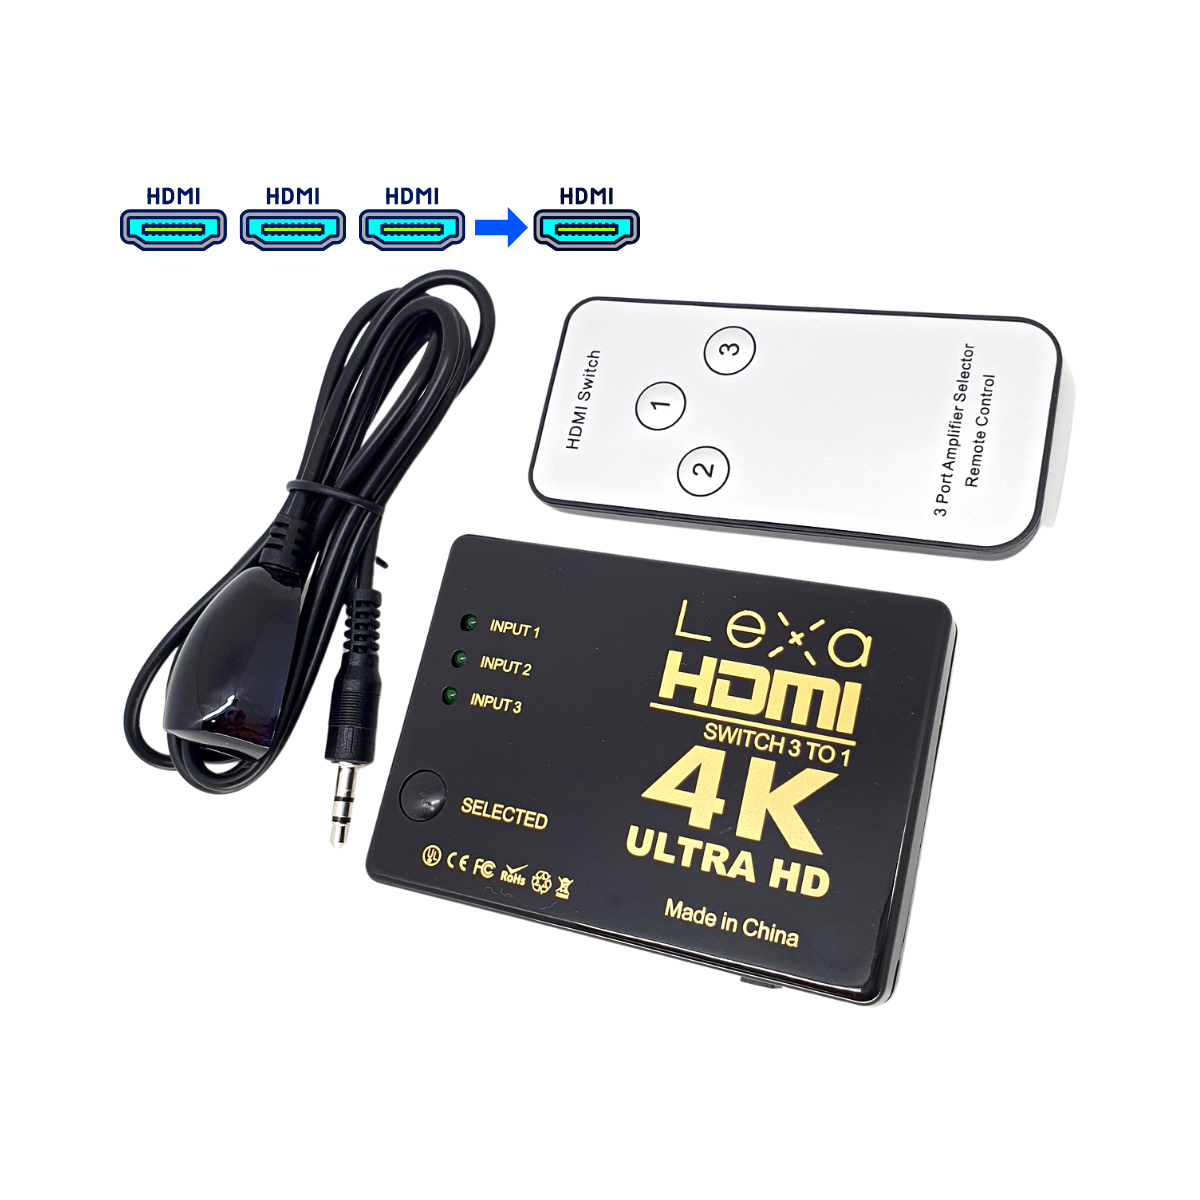 SWITCH HDMI 3 ENTRADAS 1 SALIDA CON CONTROL – Tienda MYFIMPORT